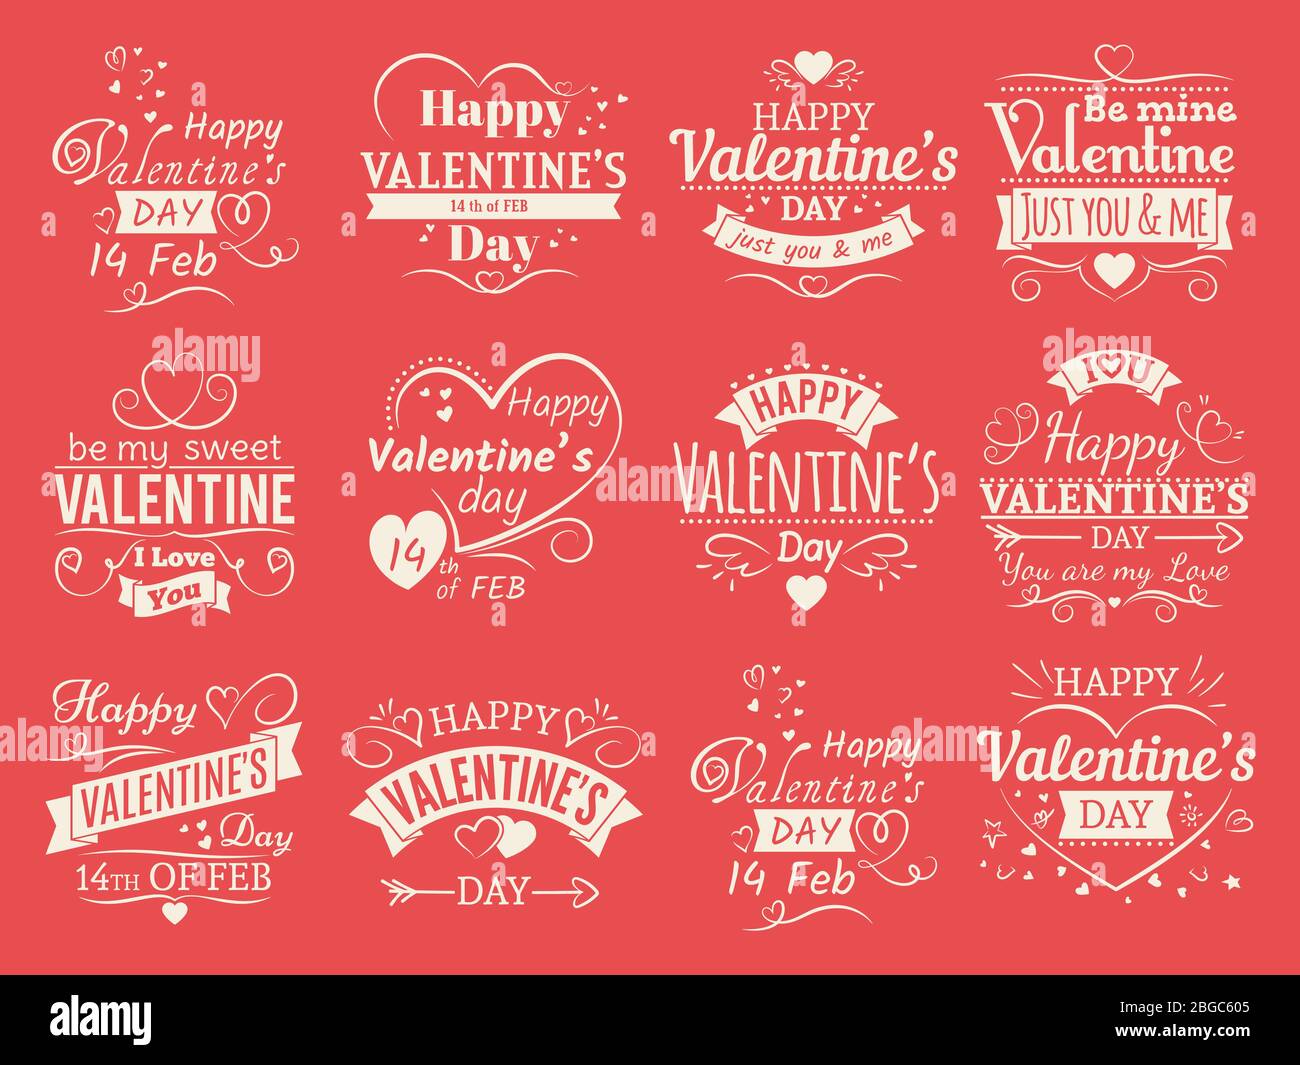 Vintage Valentinstag Vektor Banner für Liebe Grußkarte - Liebe typografische Embleme Design. Valentine Liebe und romantischen Urlaub. Vektorgrafik Stock Vektor